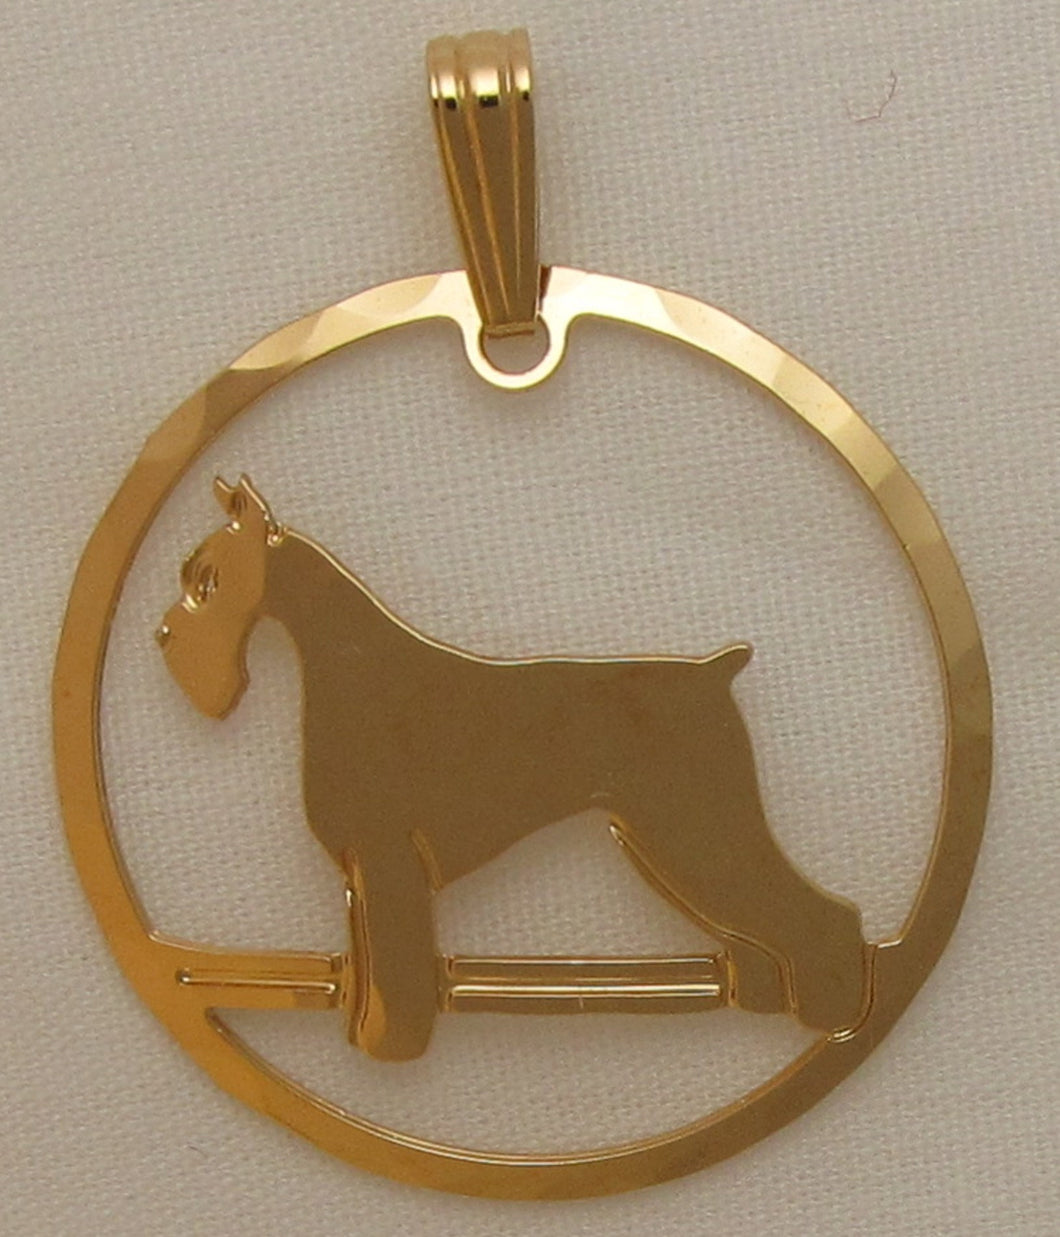 Giant Schnauzer Pendant by Touchstone Dog Designs // Schnauzer Jewelry // Dog Breed Jewelry // AKC Breed Jewelry